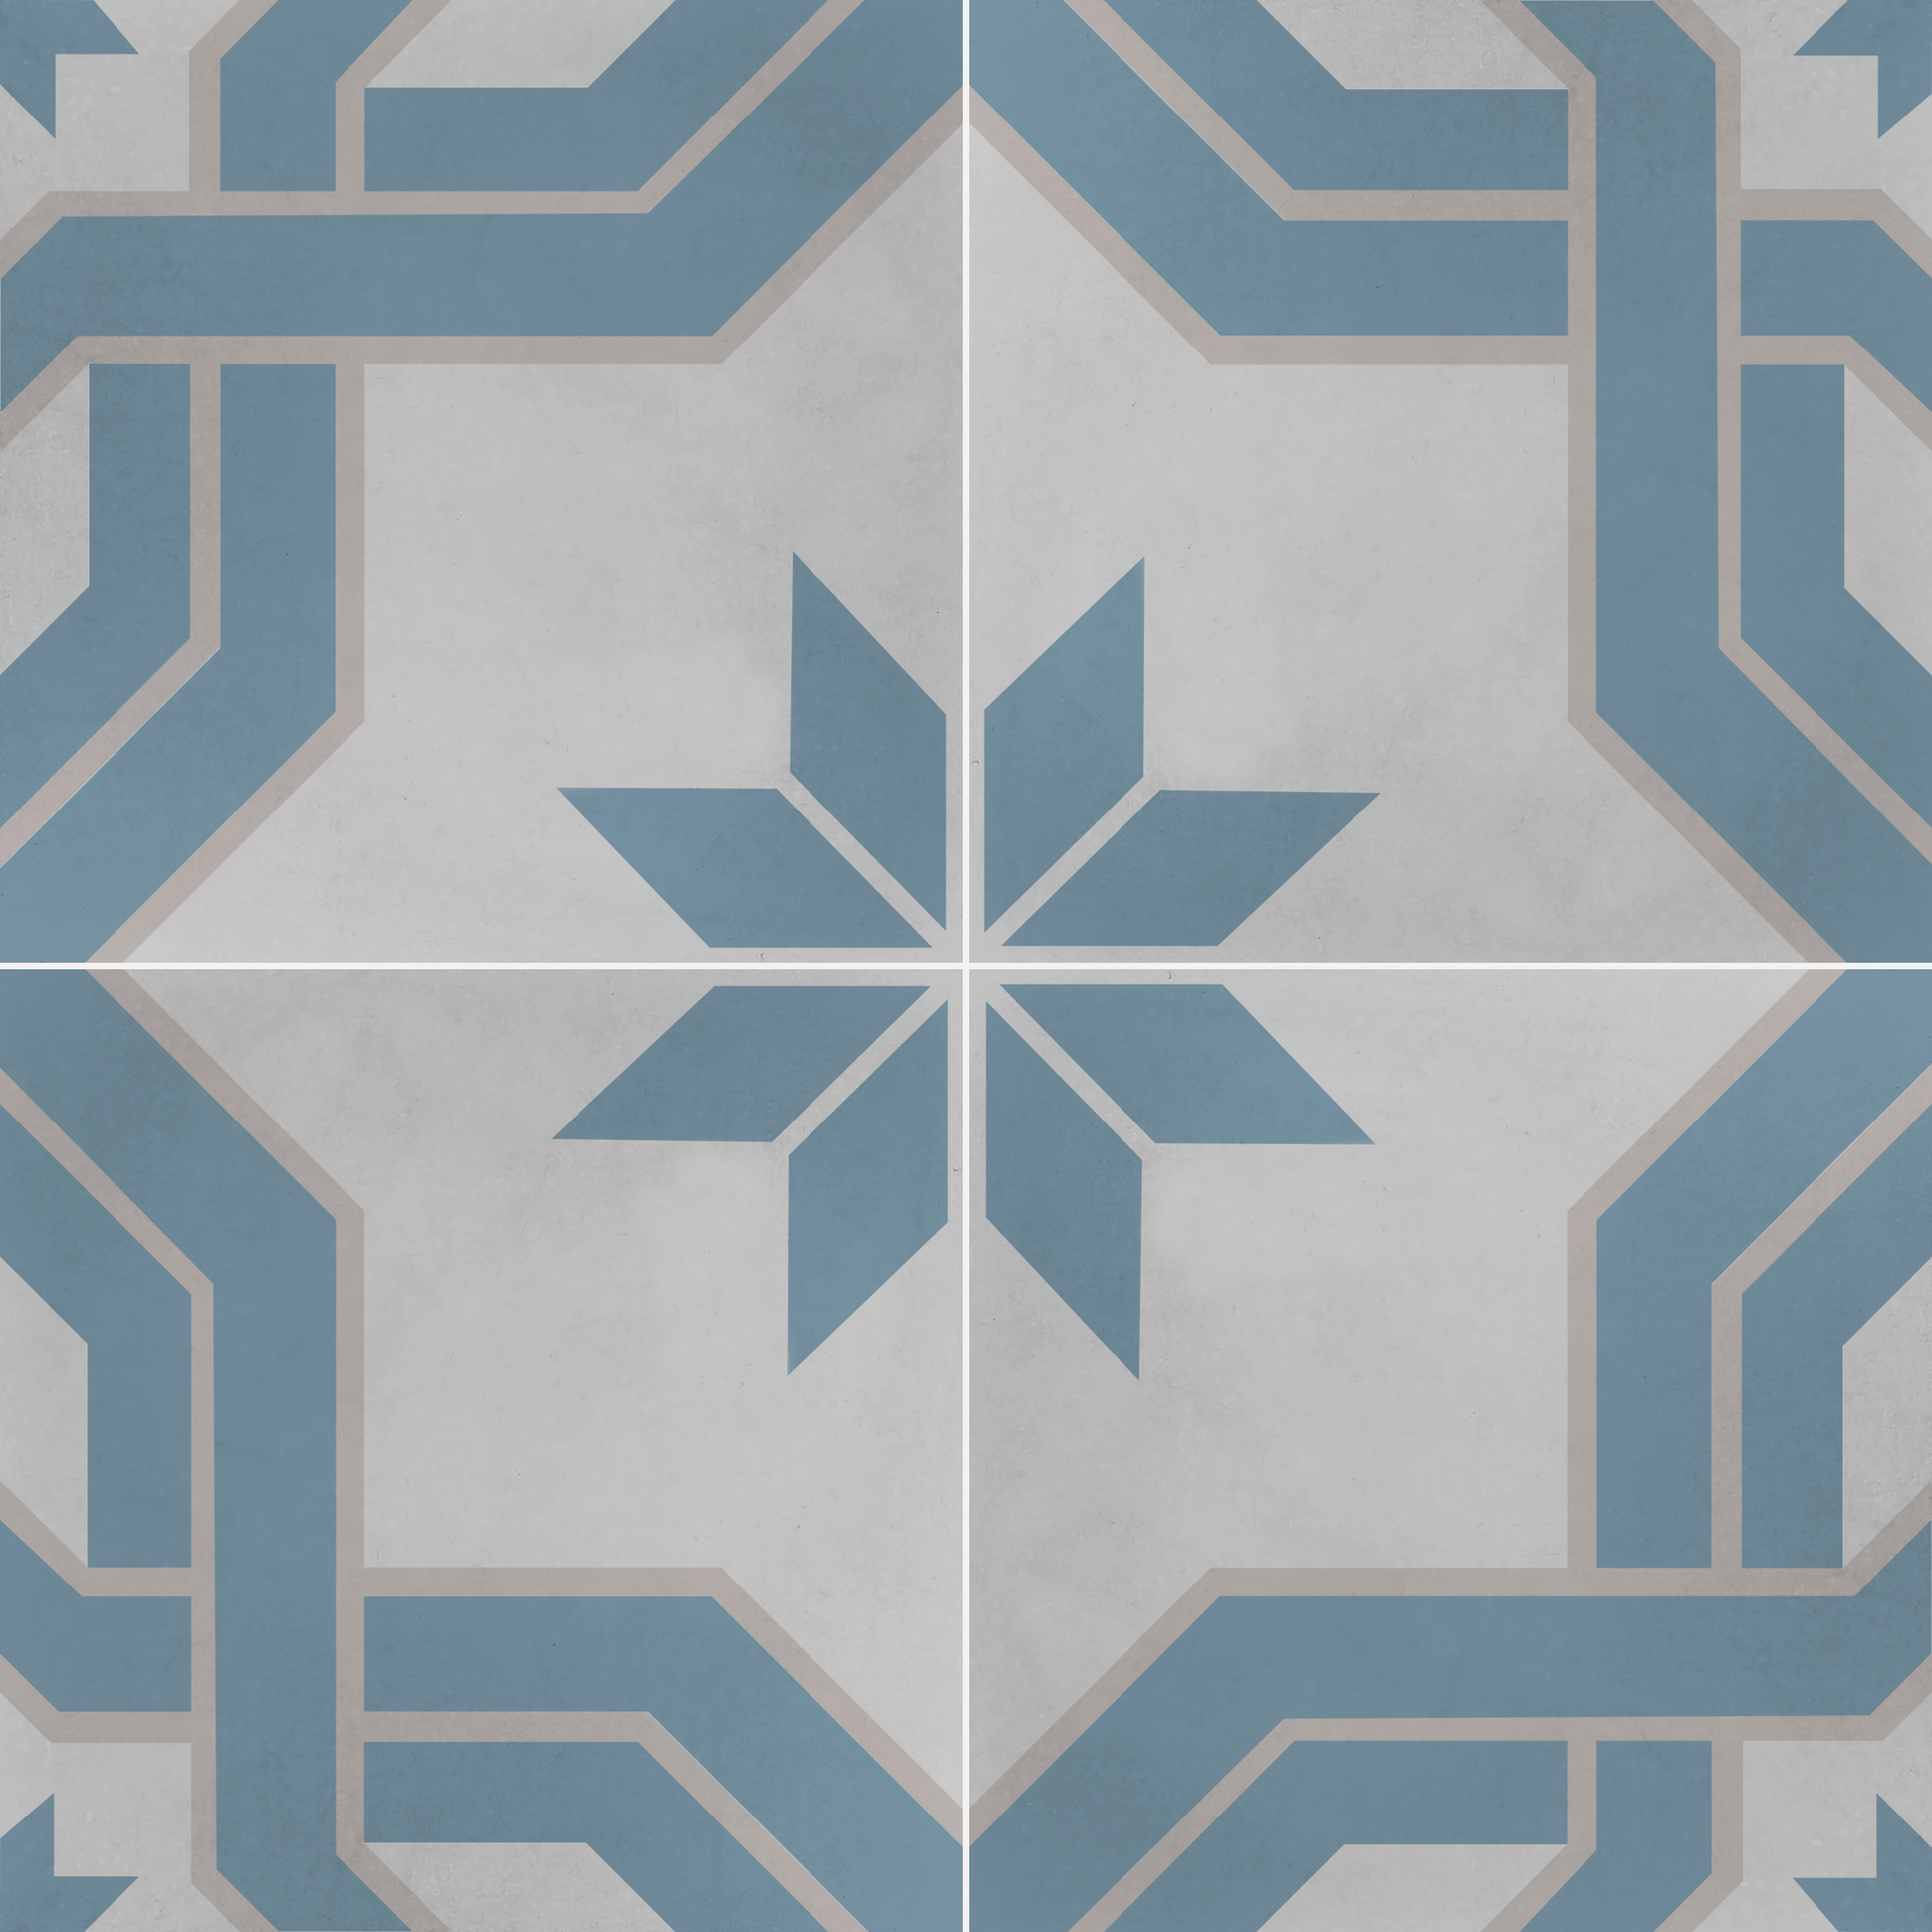 Encaustic Cement Tile, Concrete Tile, Modern Traditional , Pattern Tiles